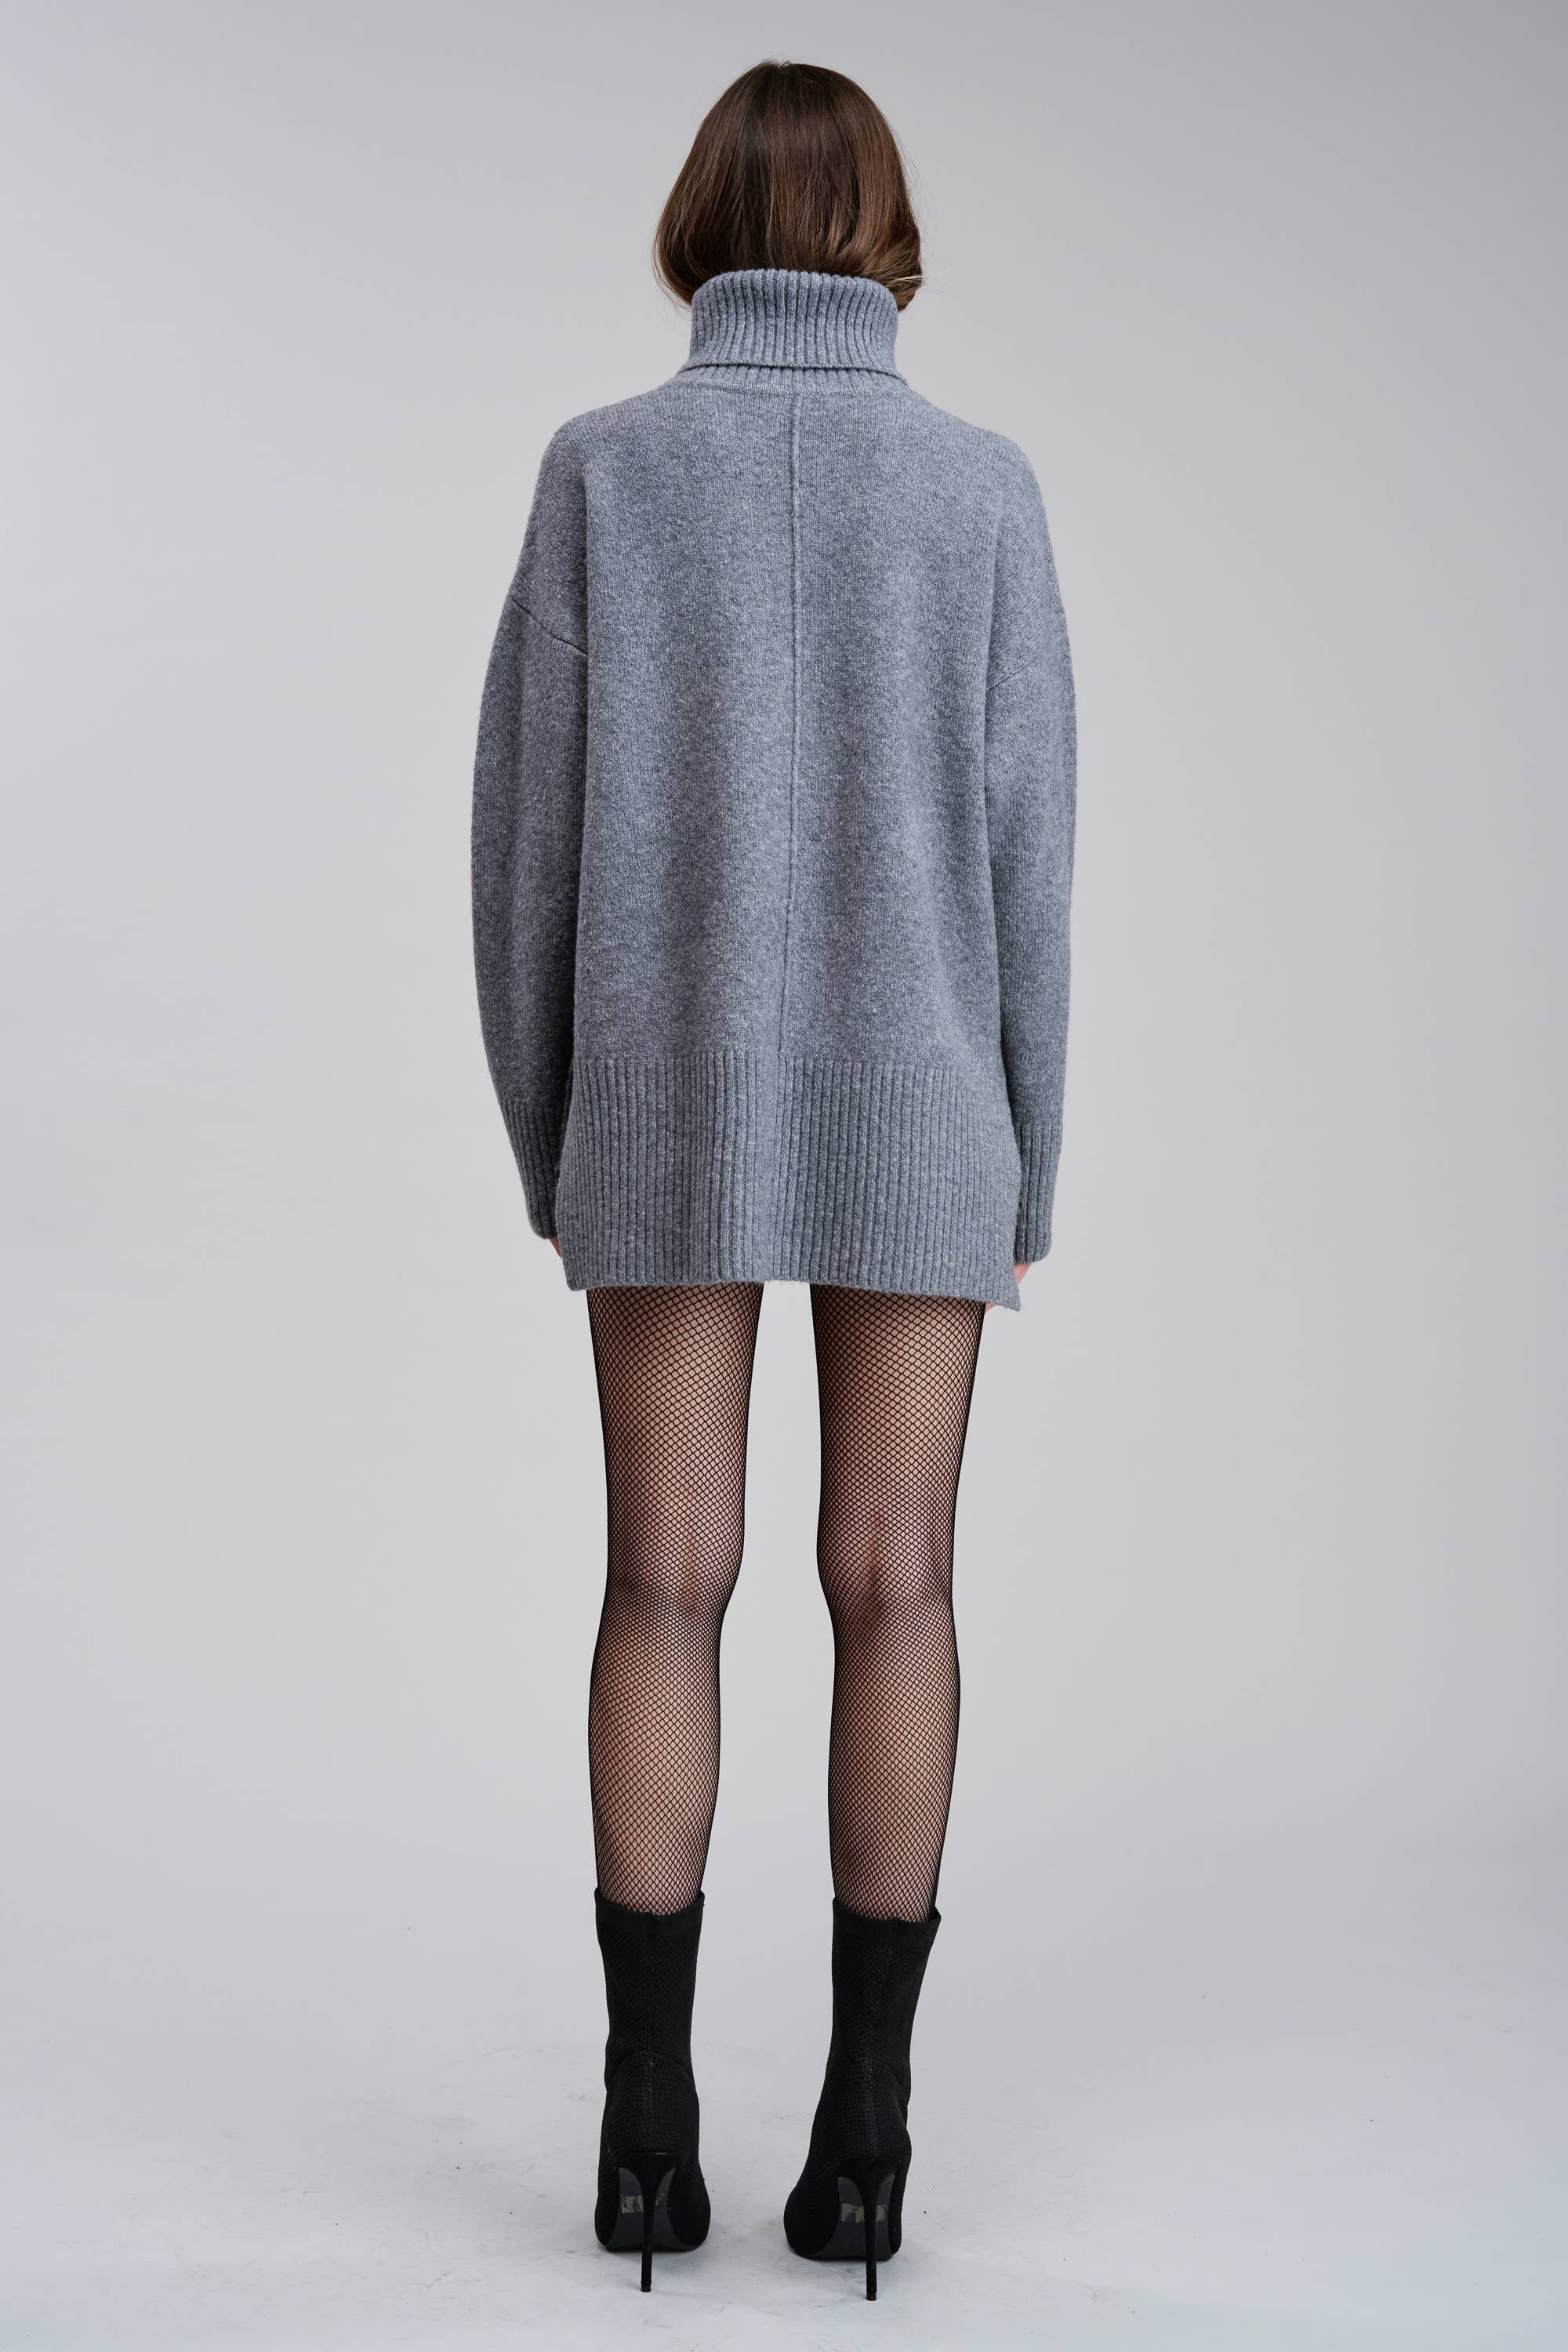 Morienne Sweater in Grey